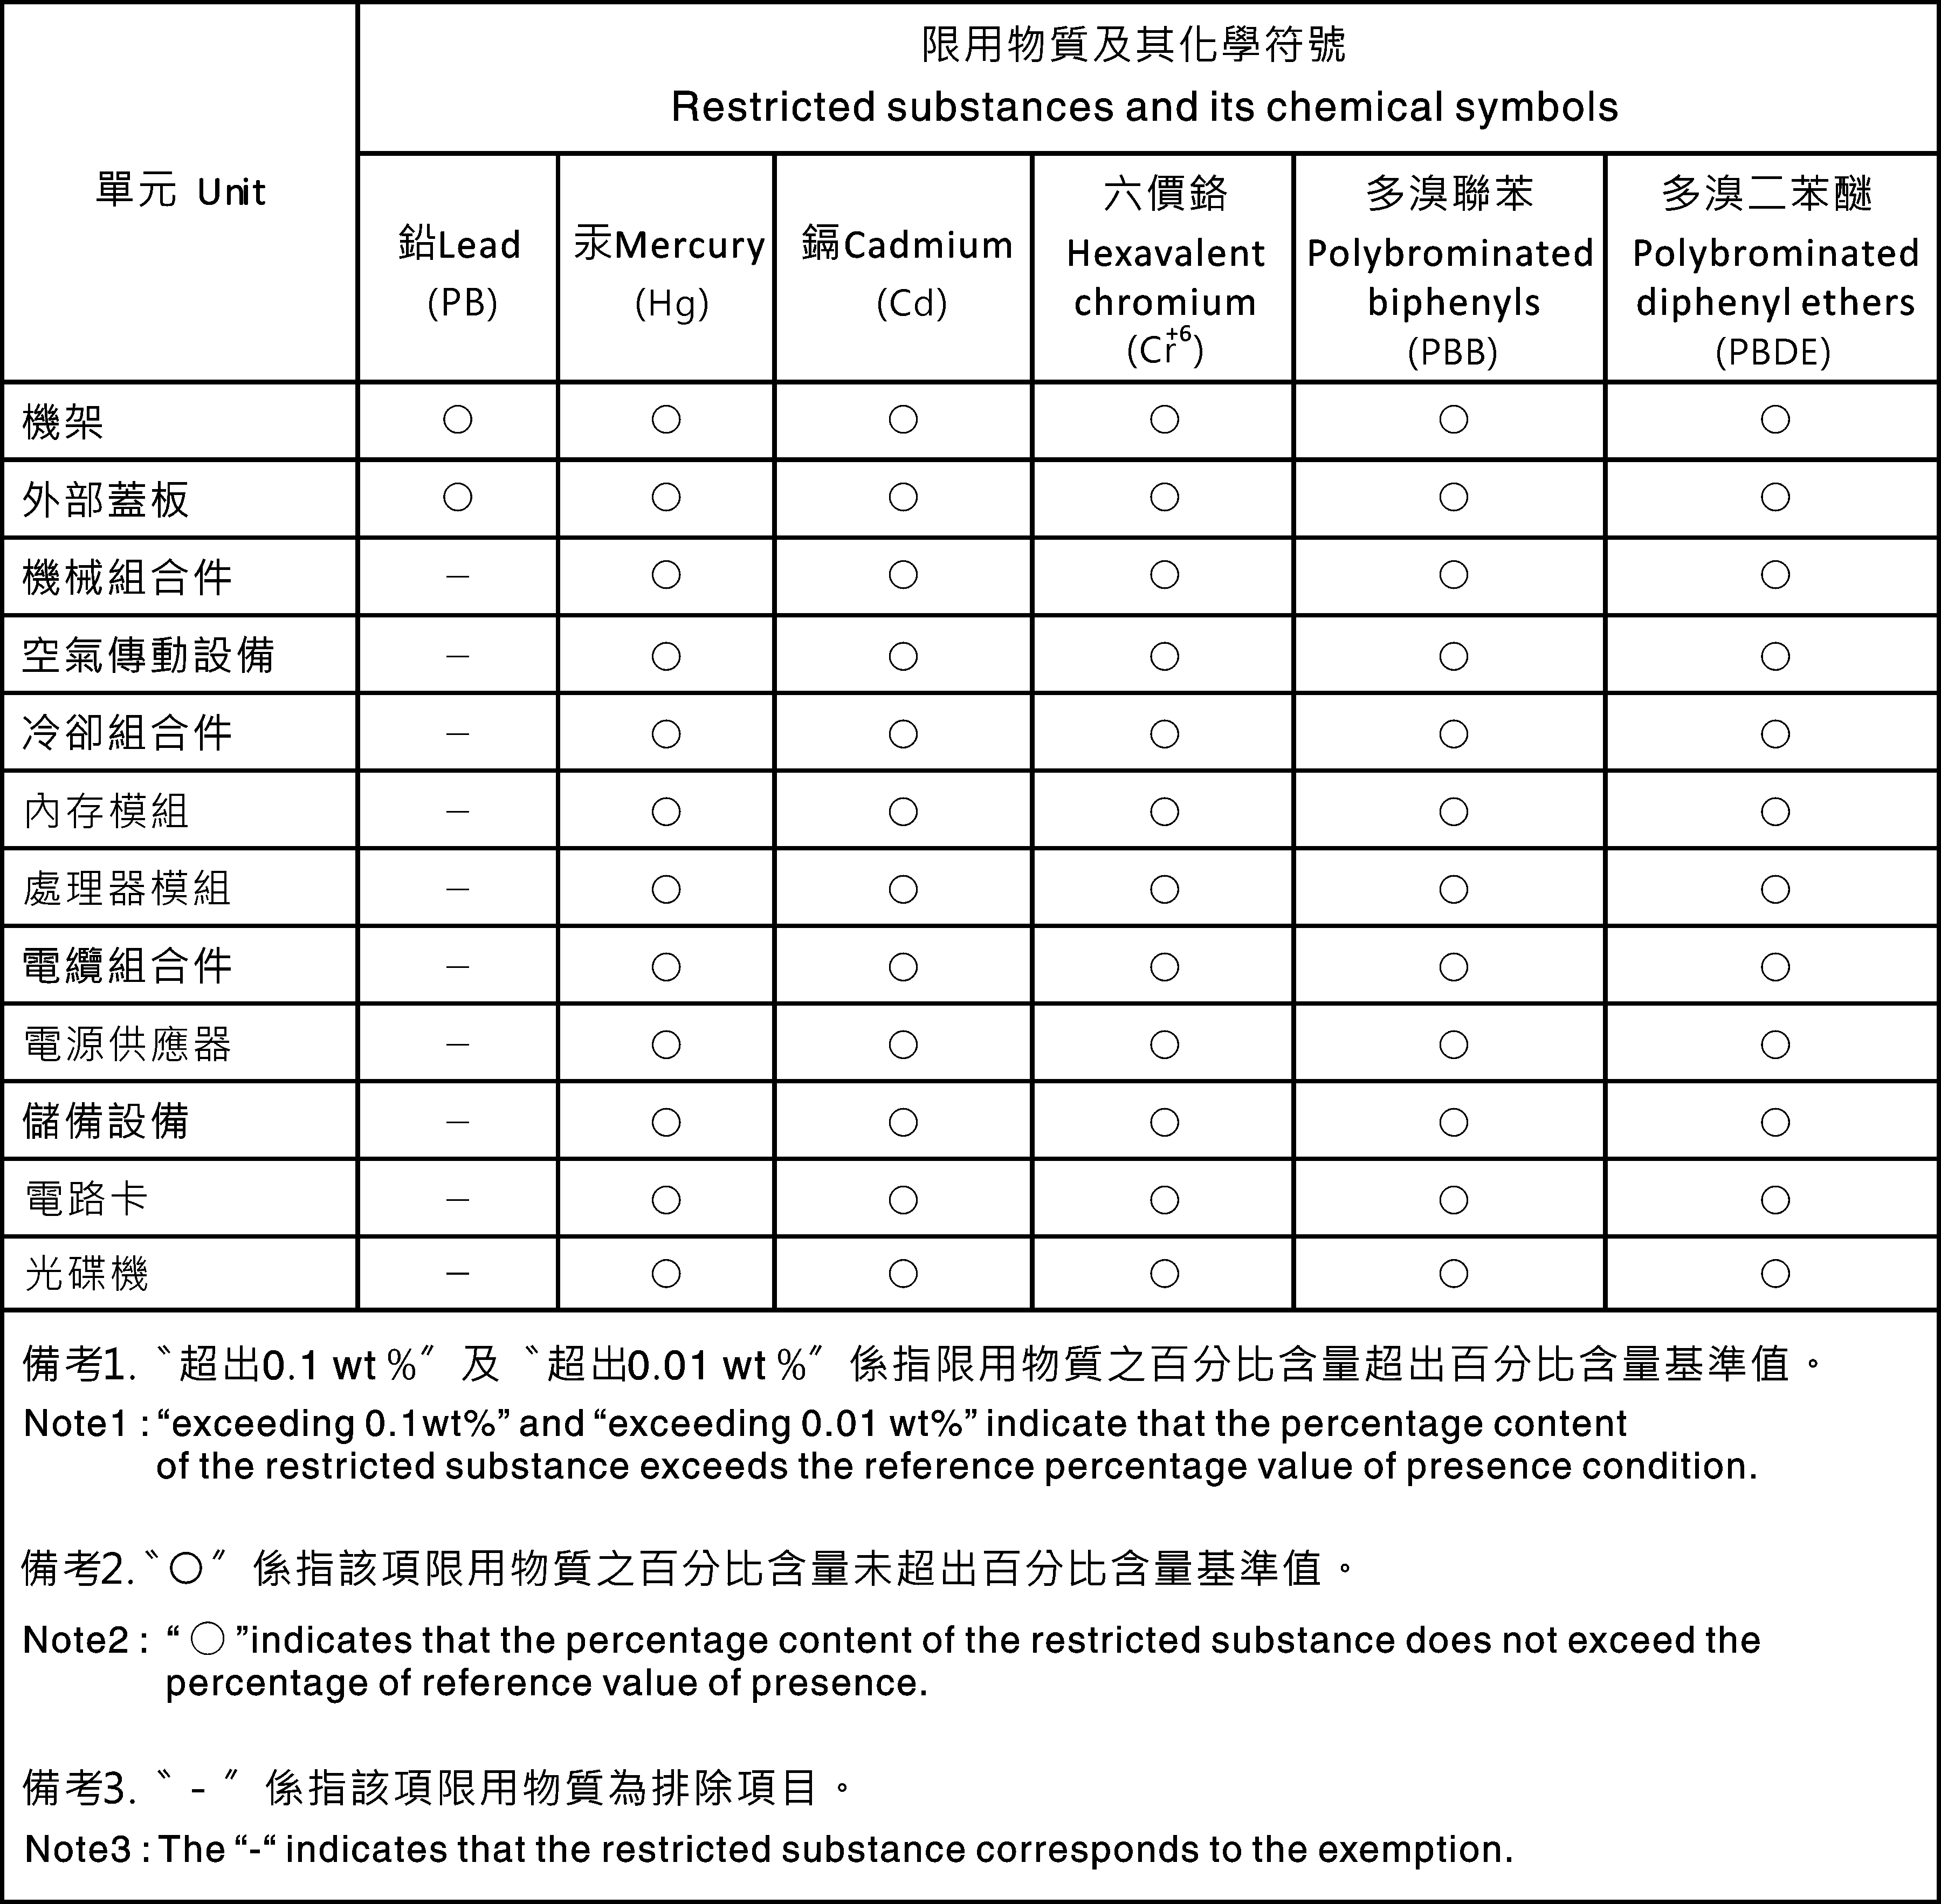 Заявление о соответствии энергопотребления классу A для Тайваня